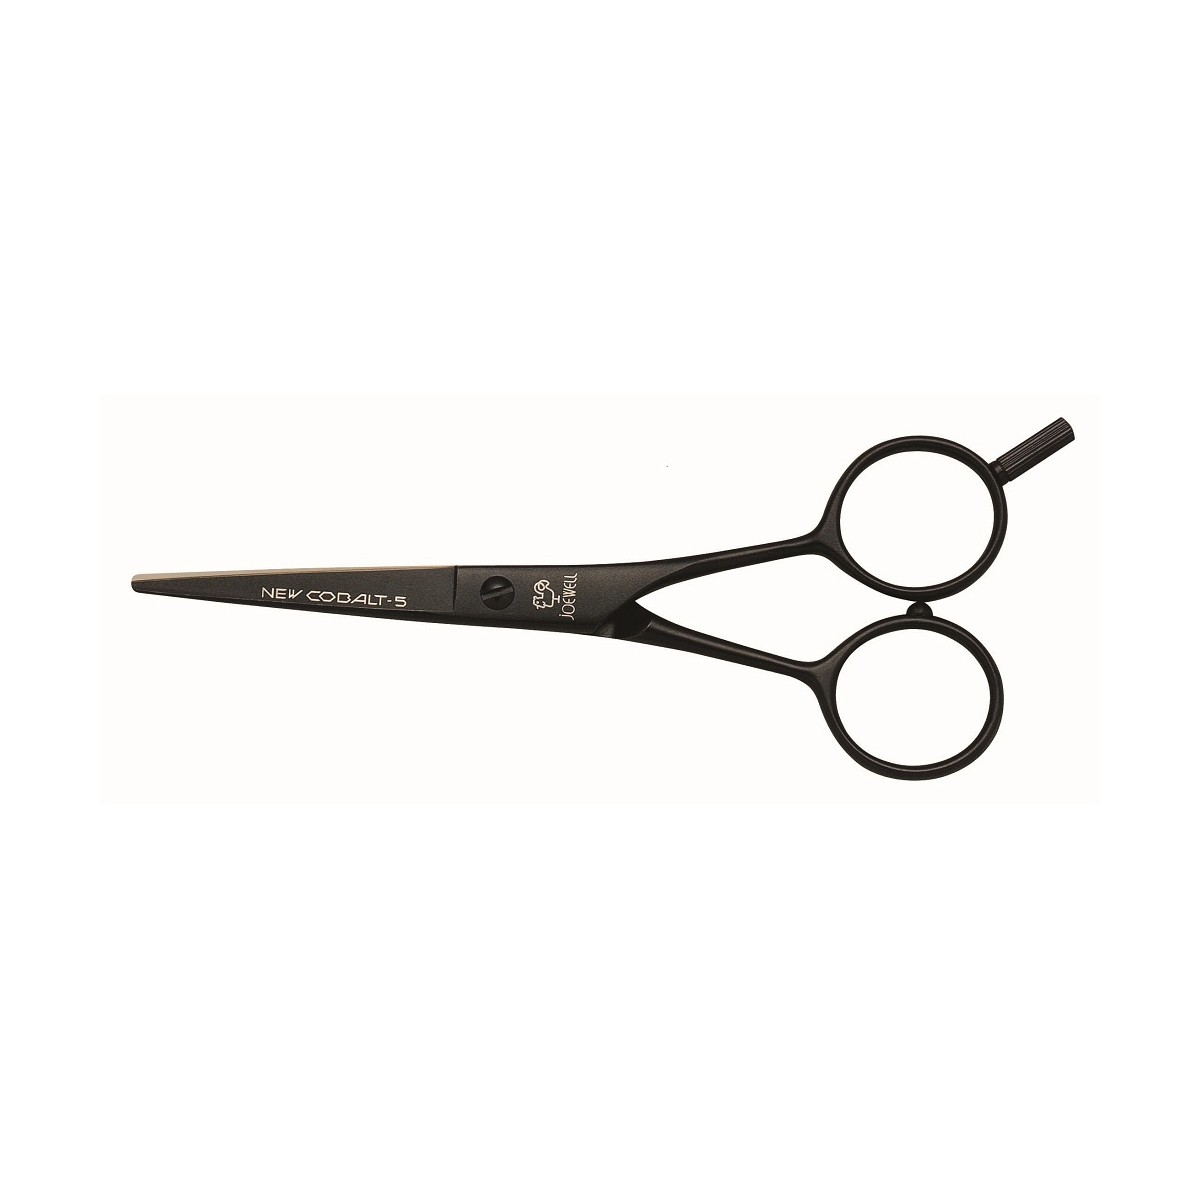 Fancy Hair Scissors Clip Art | Clipart Panda - Free Clipart Images